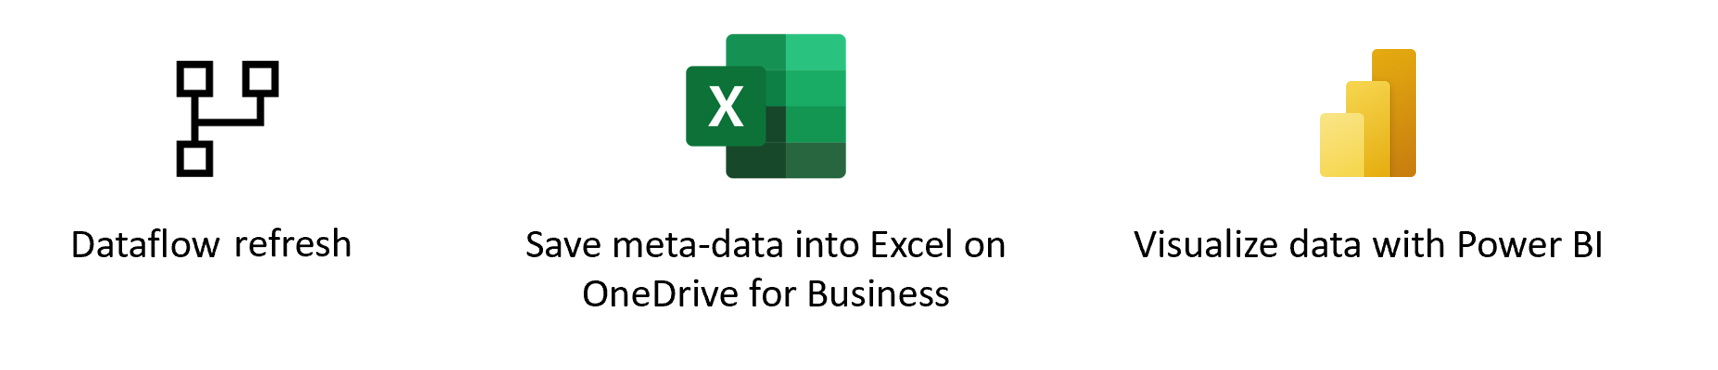 Obrázek přehledu načítání dat prostřednictvím Excelu